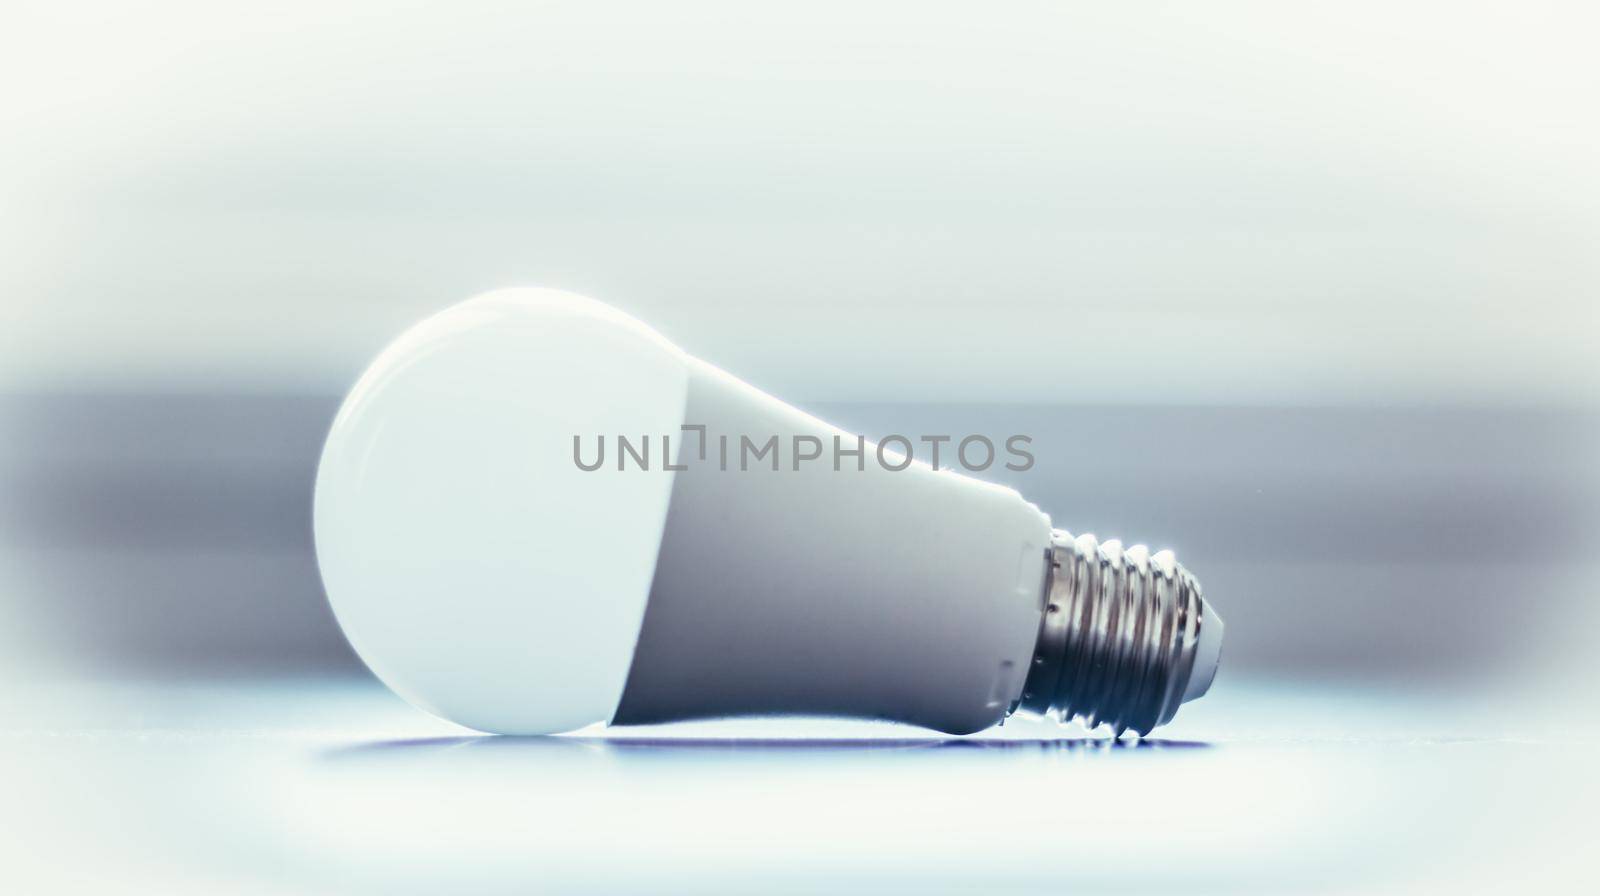 Ideas and innovation: light bulb lying on a desk by Daxenbichler